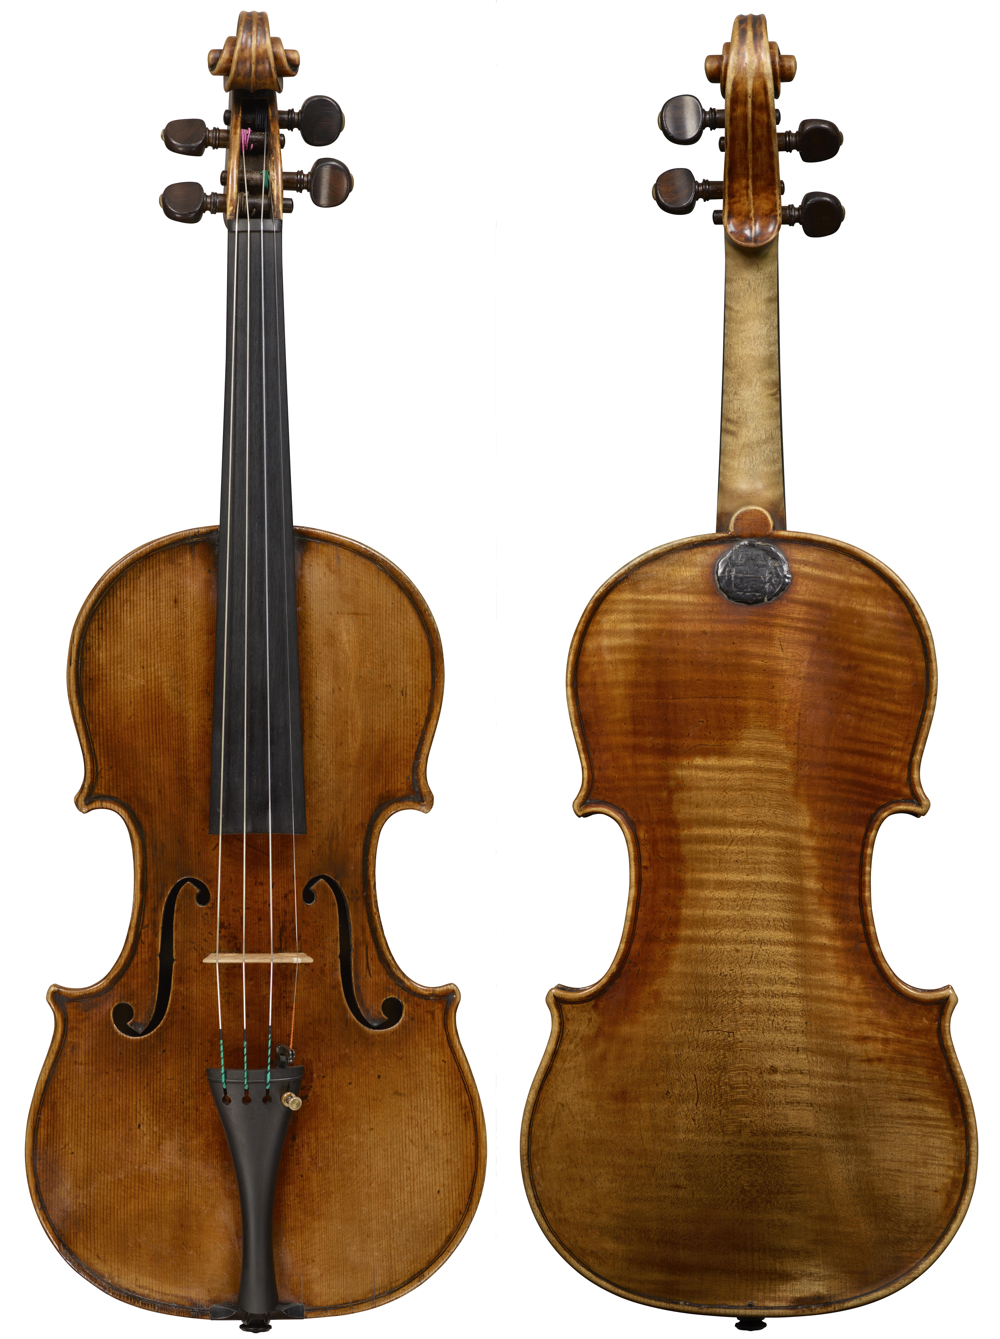 The 'Prince Khevenhuller' Stradivari of 1733